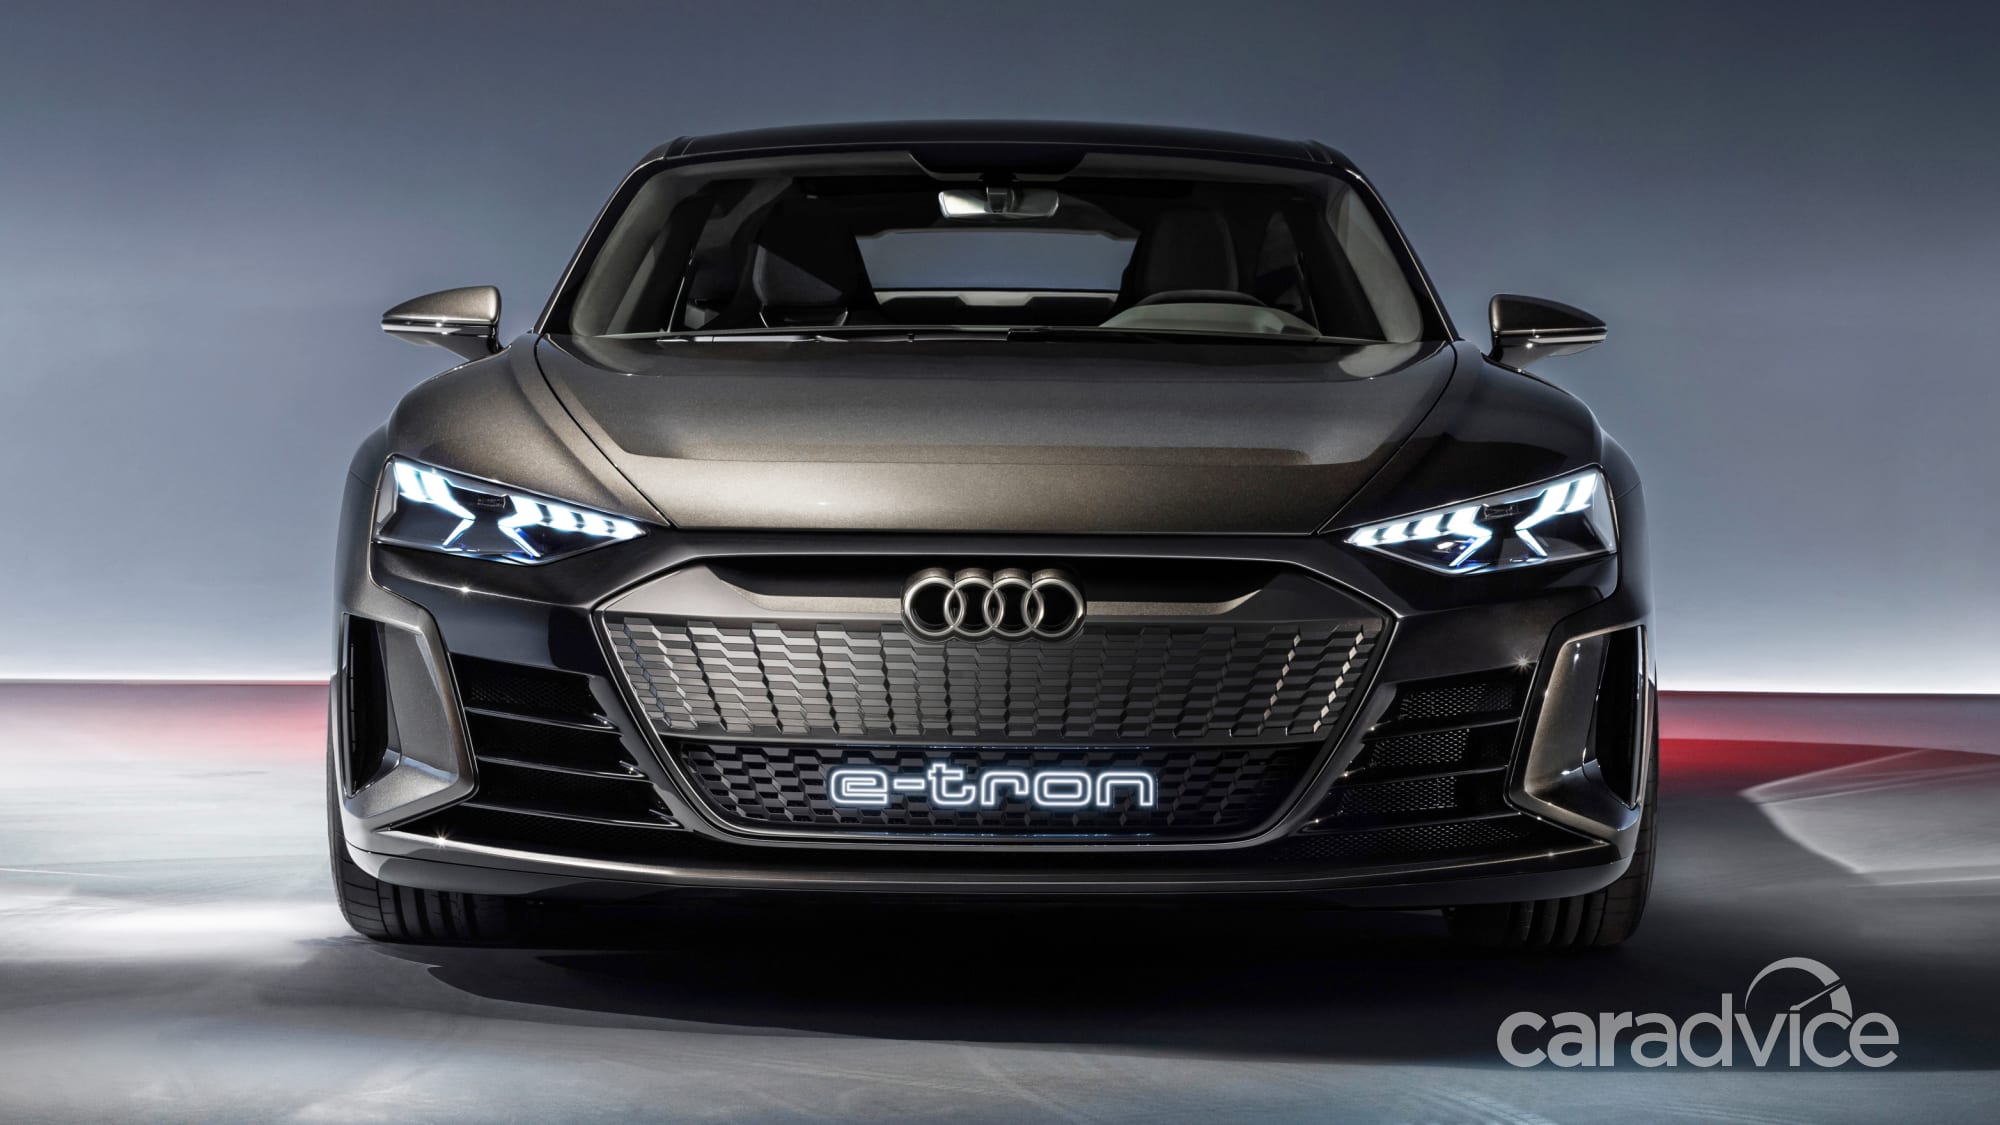 Zamaskovaný prototyp Audi e-tron GT (Foto: Caradvice.com)